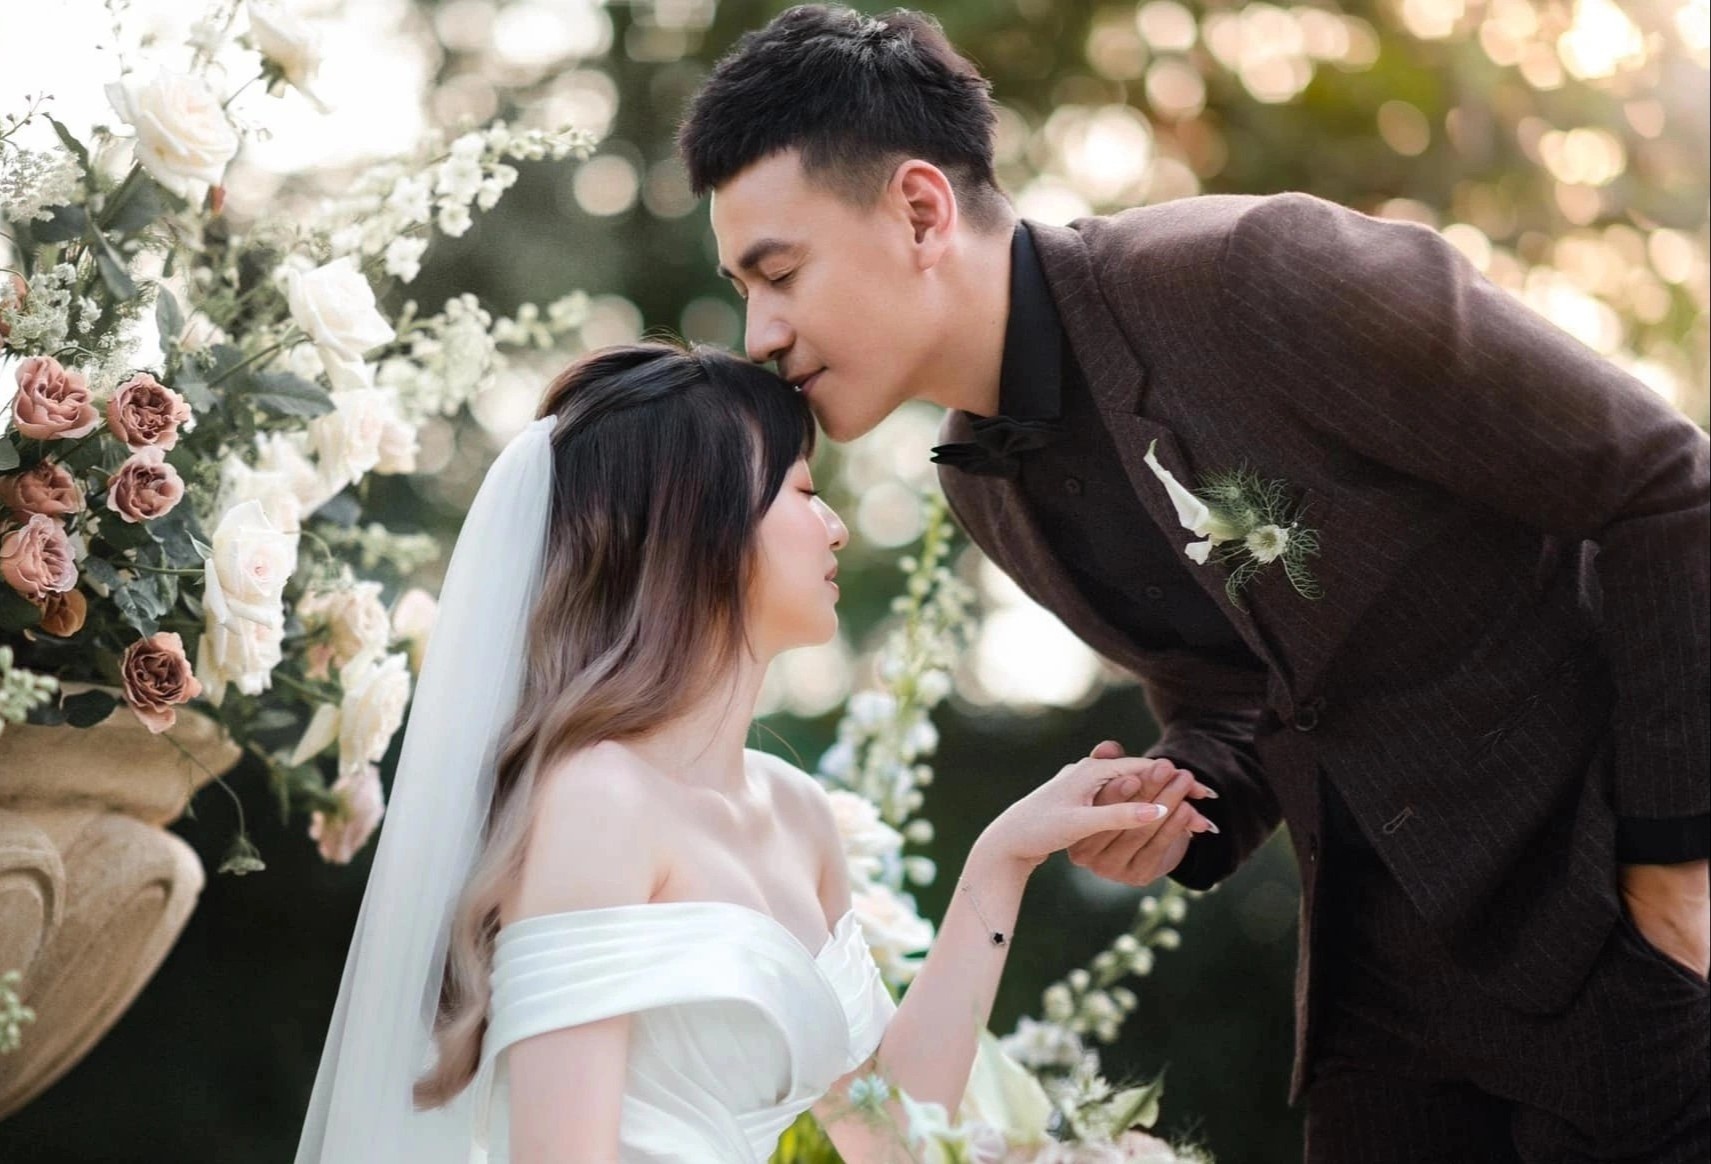 Ngắm ảnh cưới của Ngọc Thuận và bạn gái kém tuổi là cảm giác lãng mạn vô cùng. Bức ảnh tuyệt đẹp này sẽ khiến bạn cảm nhận được niềm vui và hạnh phúc khó tả của hai người trong ngày cưới của mình.